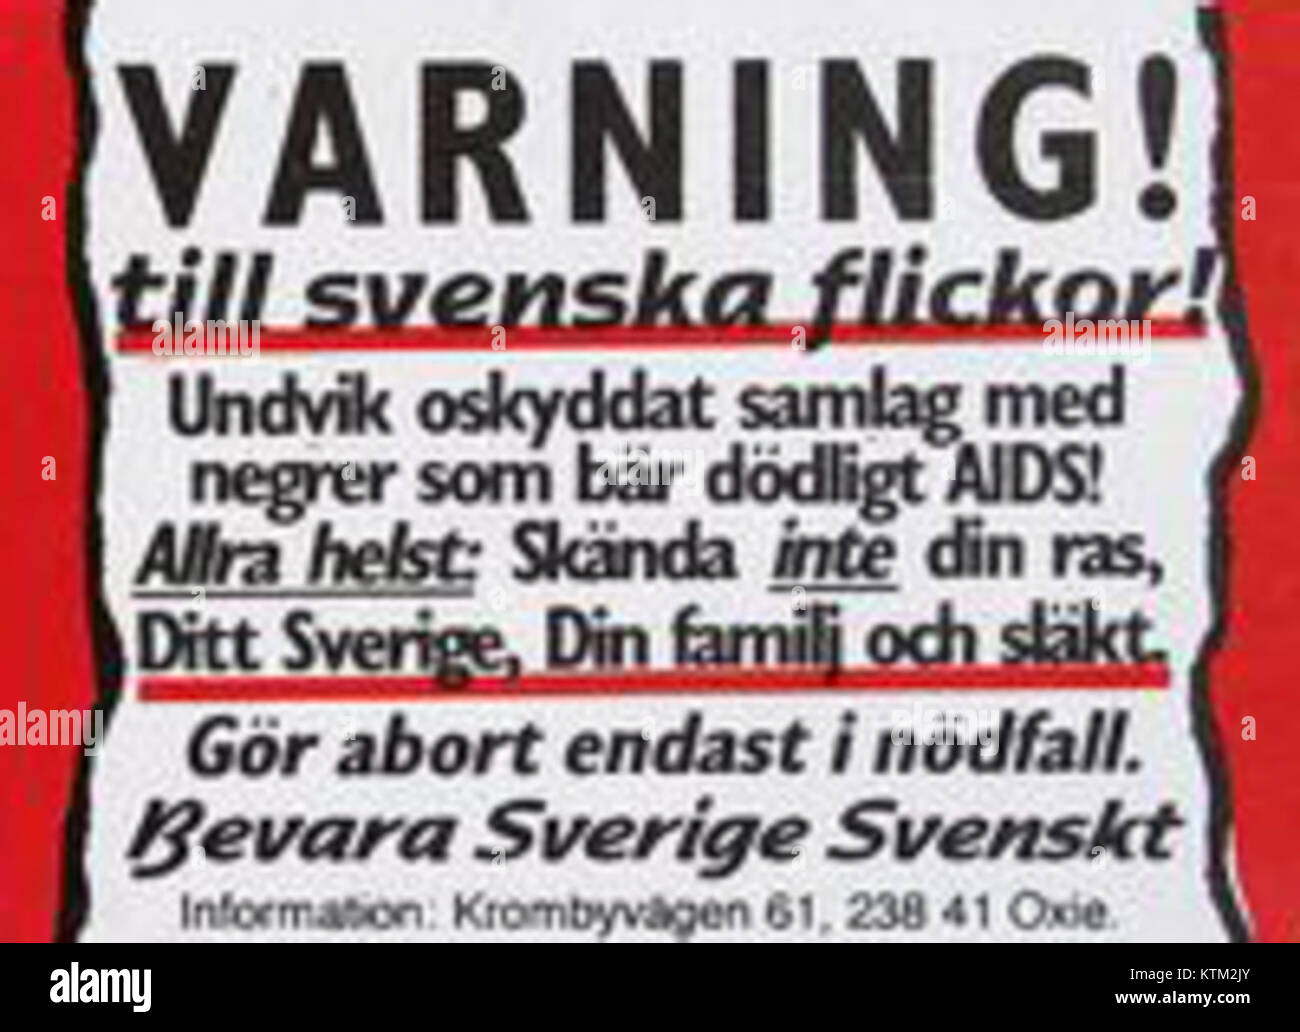 BSS Varning till Svenska flickor Stockfoto